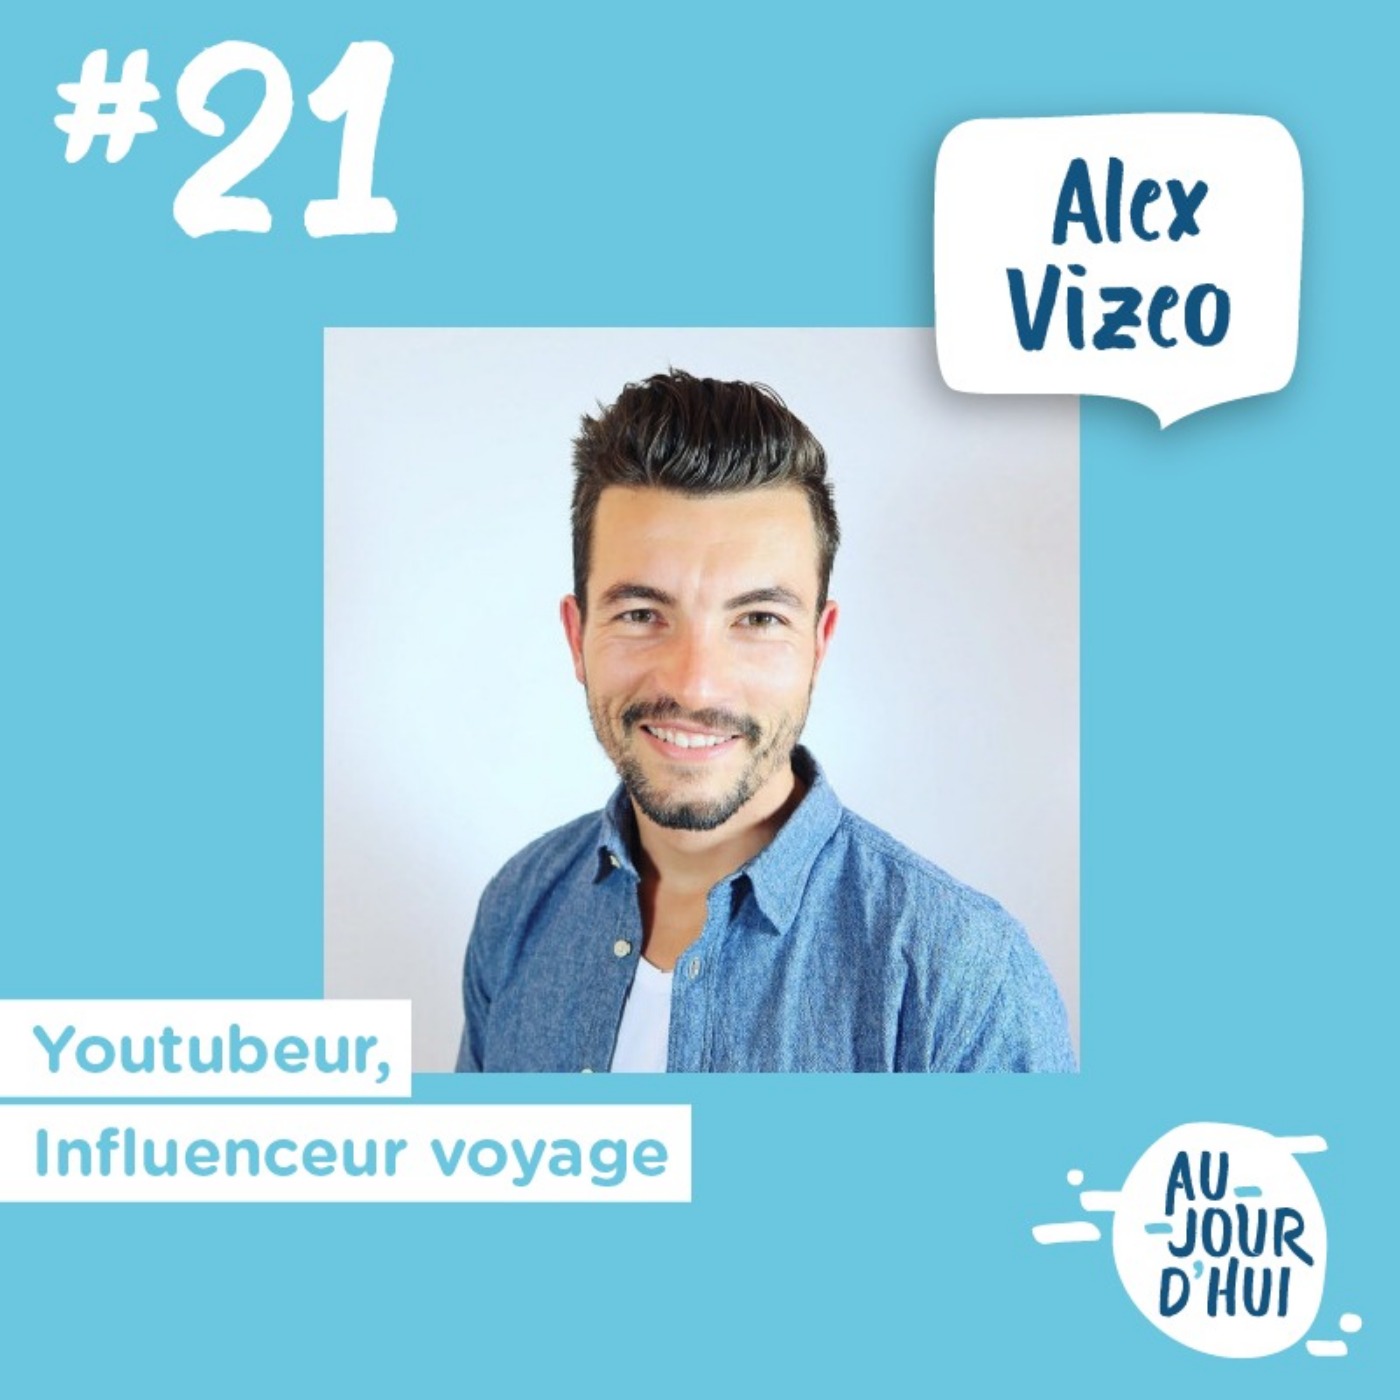 #21 Alex Vizeo “La plus petite des actions vaut mieux que la plus belle des intentions”